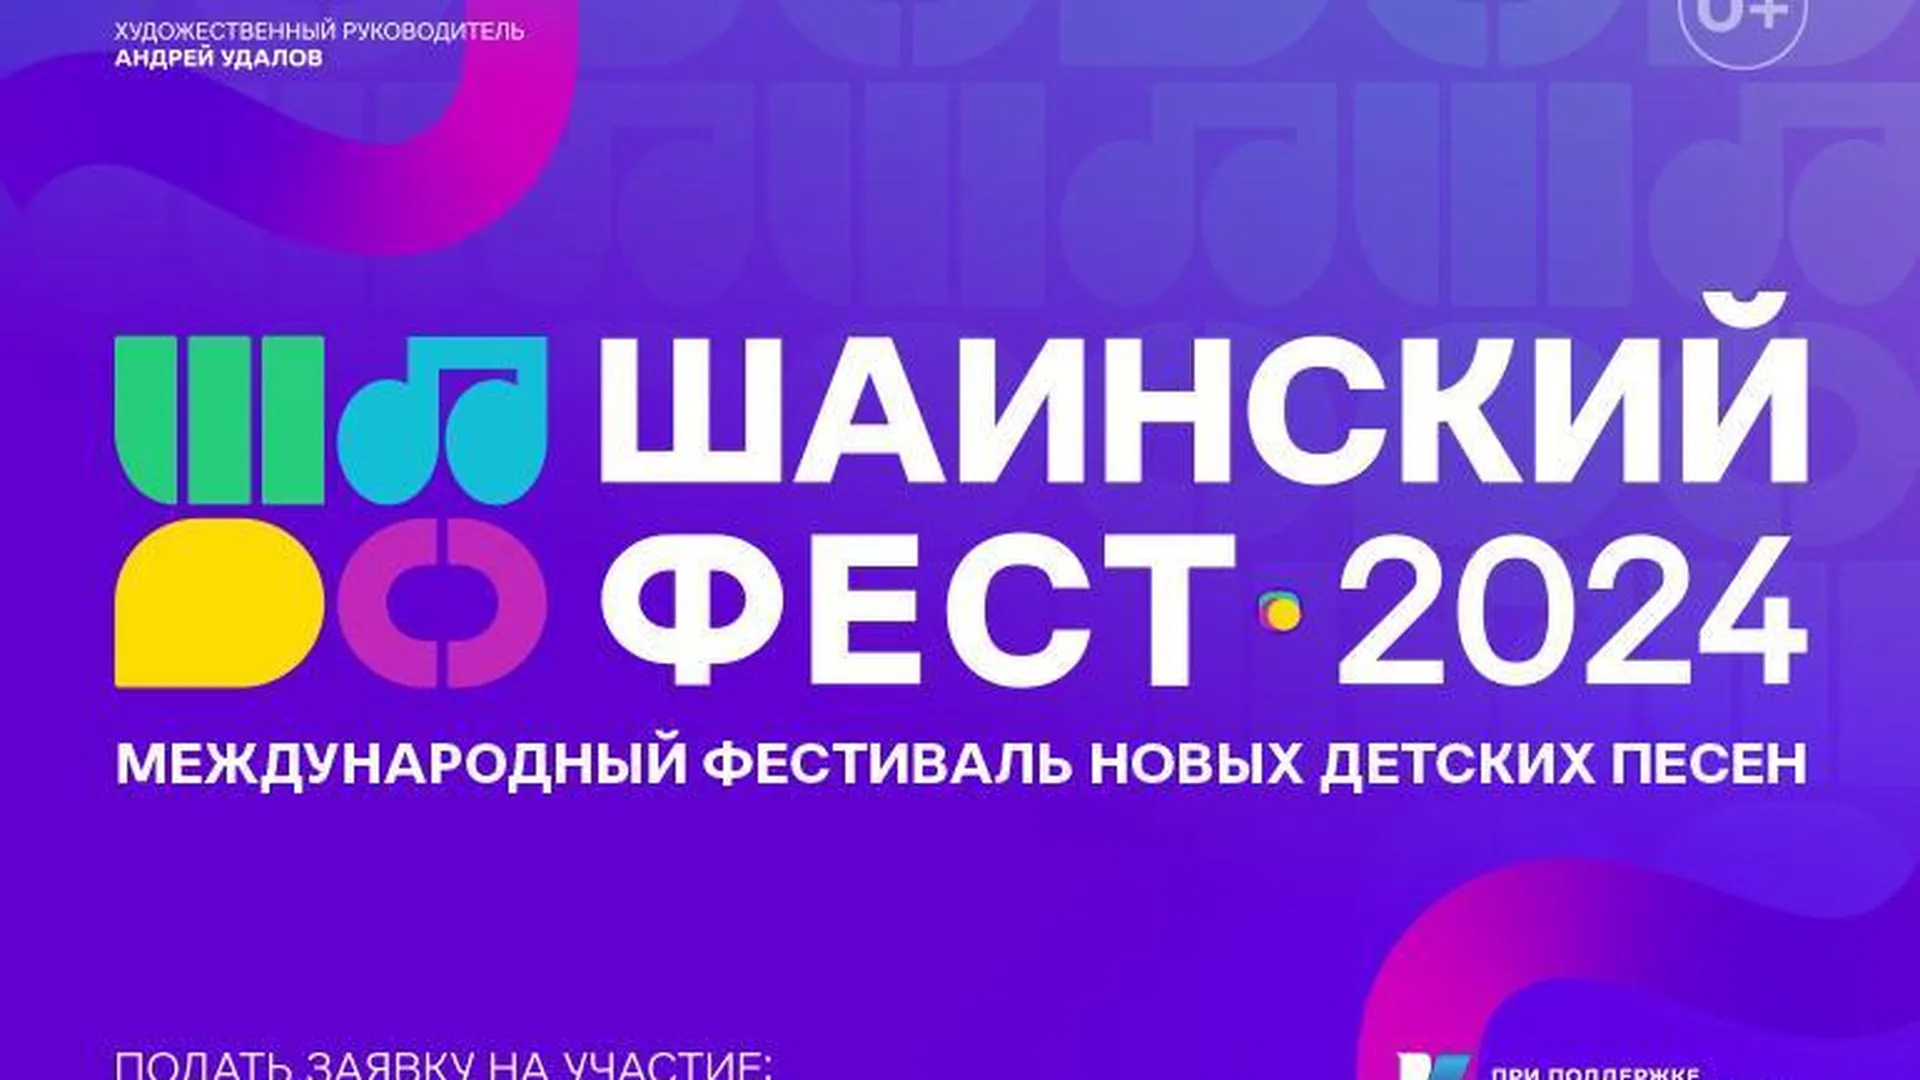 В Подмосковье пройдет первый этап конкурса новых детских песен «Шаинский фест»